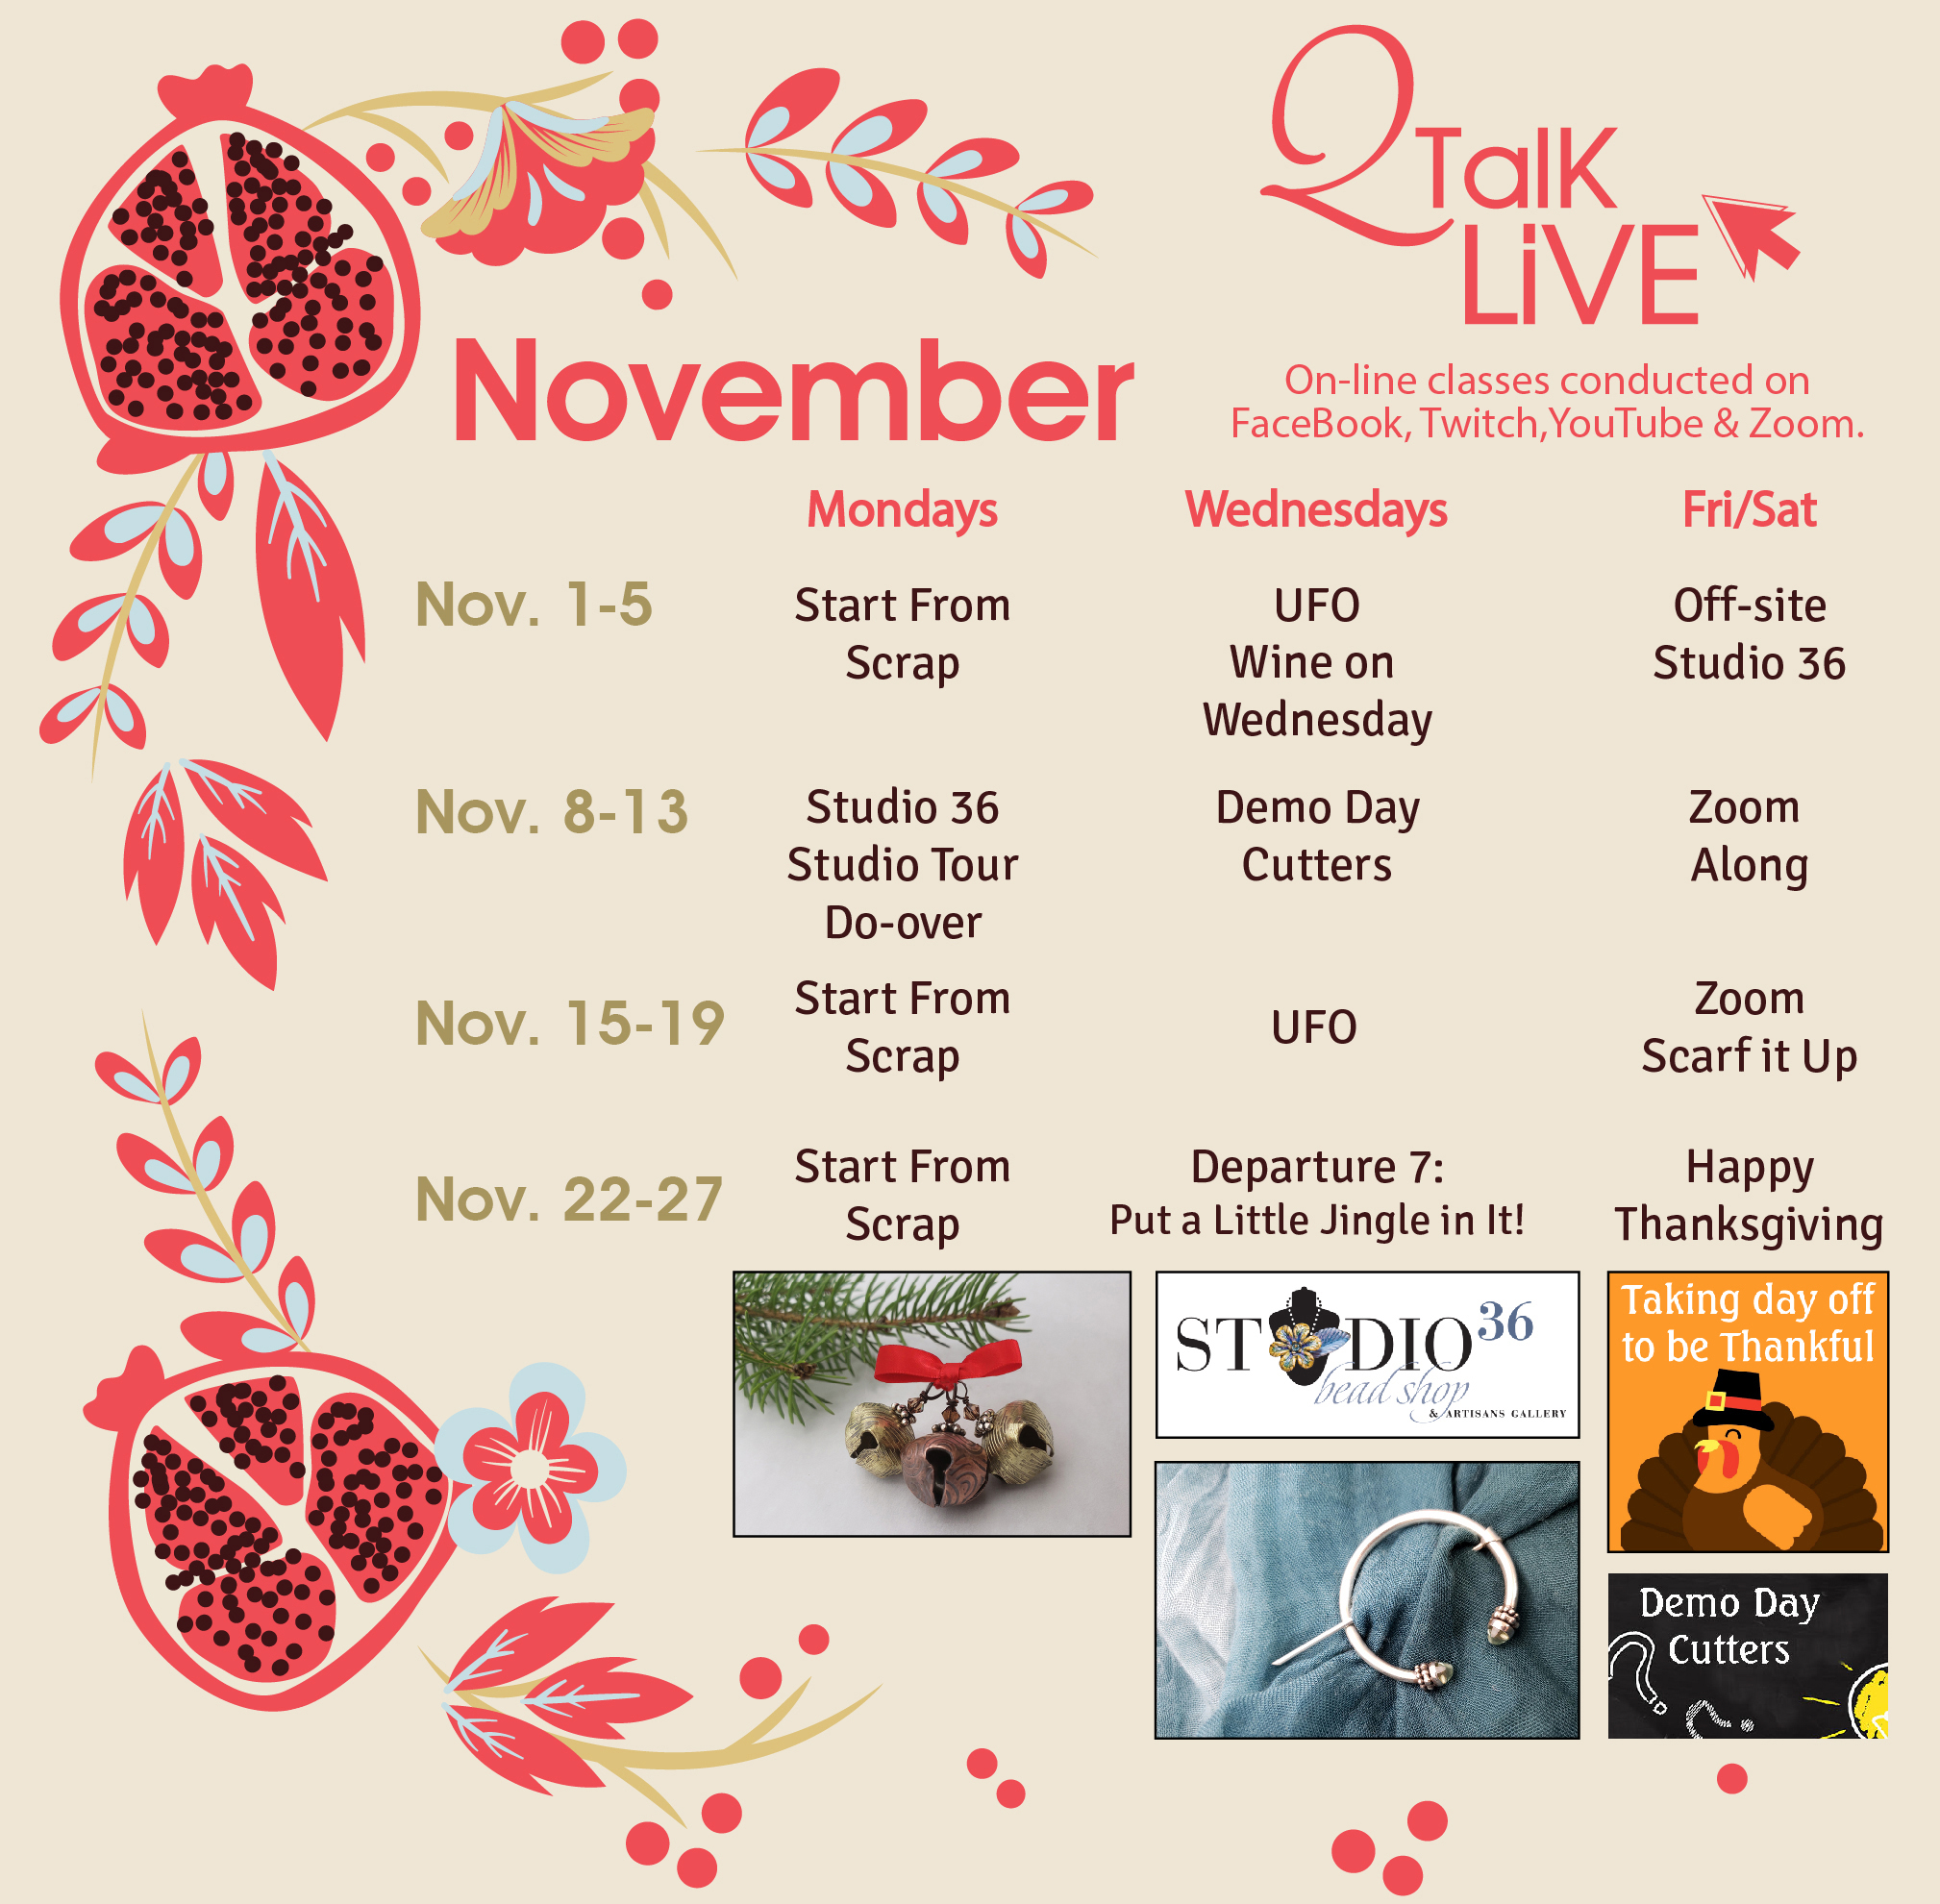 QTalk Live Nov. 21